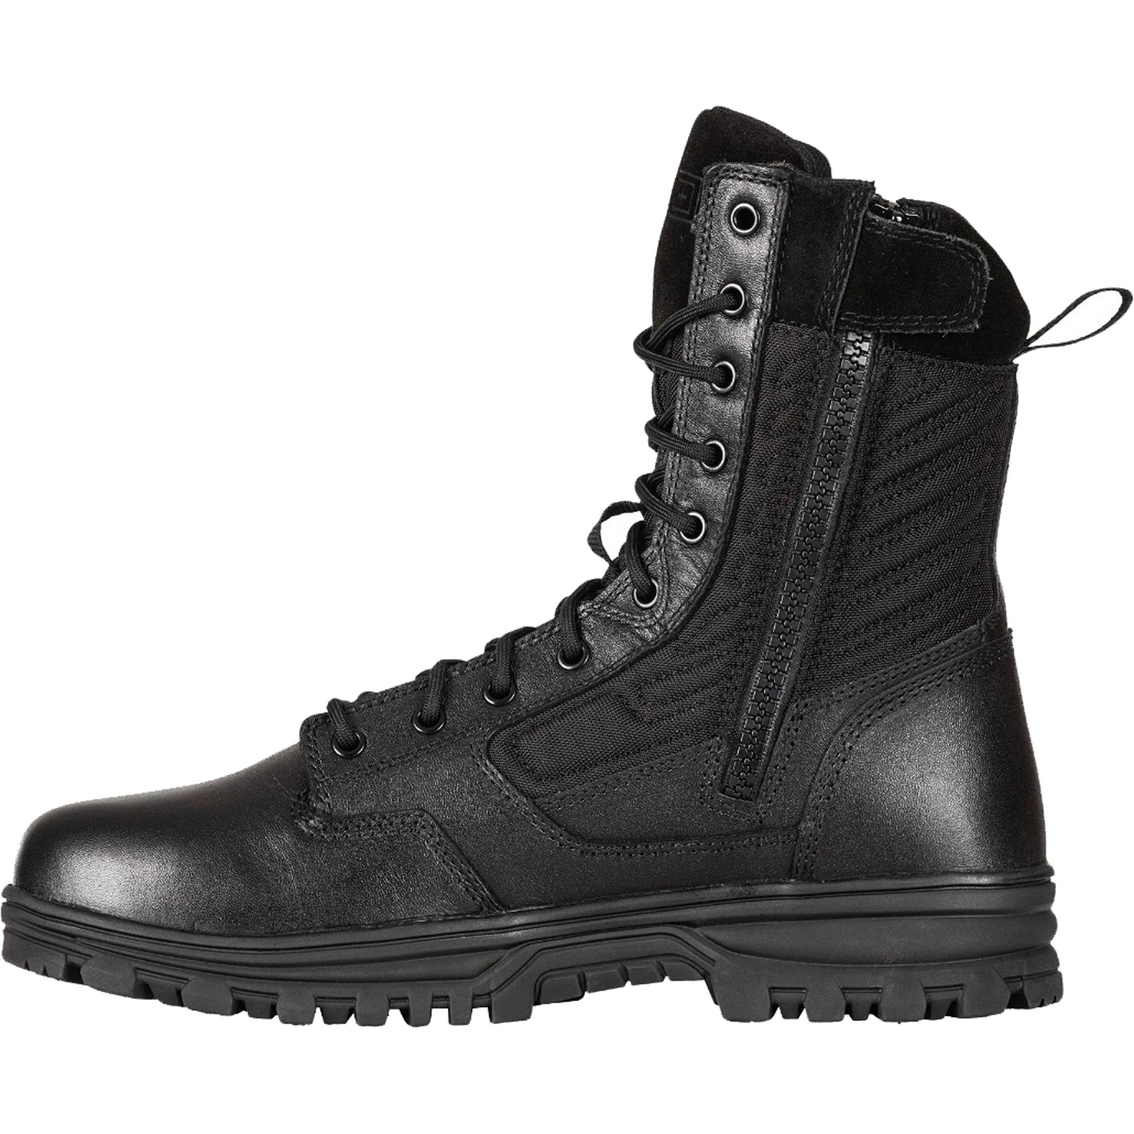 5.11 Men's Evo 2.0 Black 8 in. Boots - Image 2 of 7